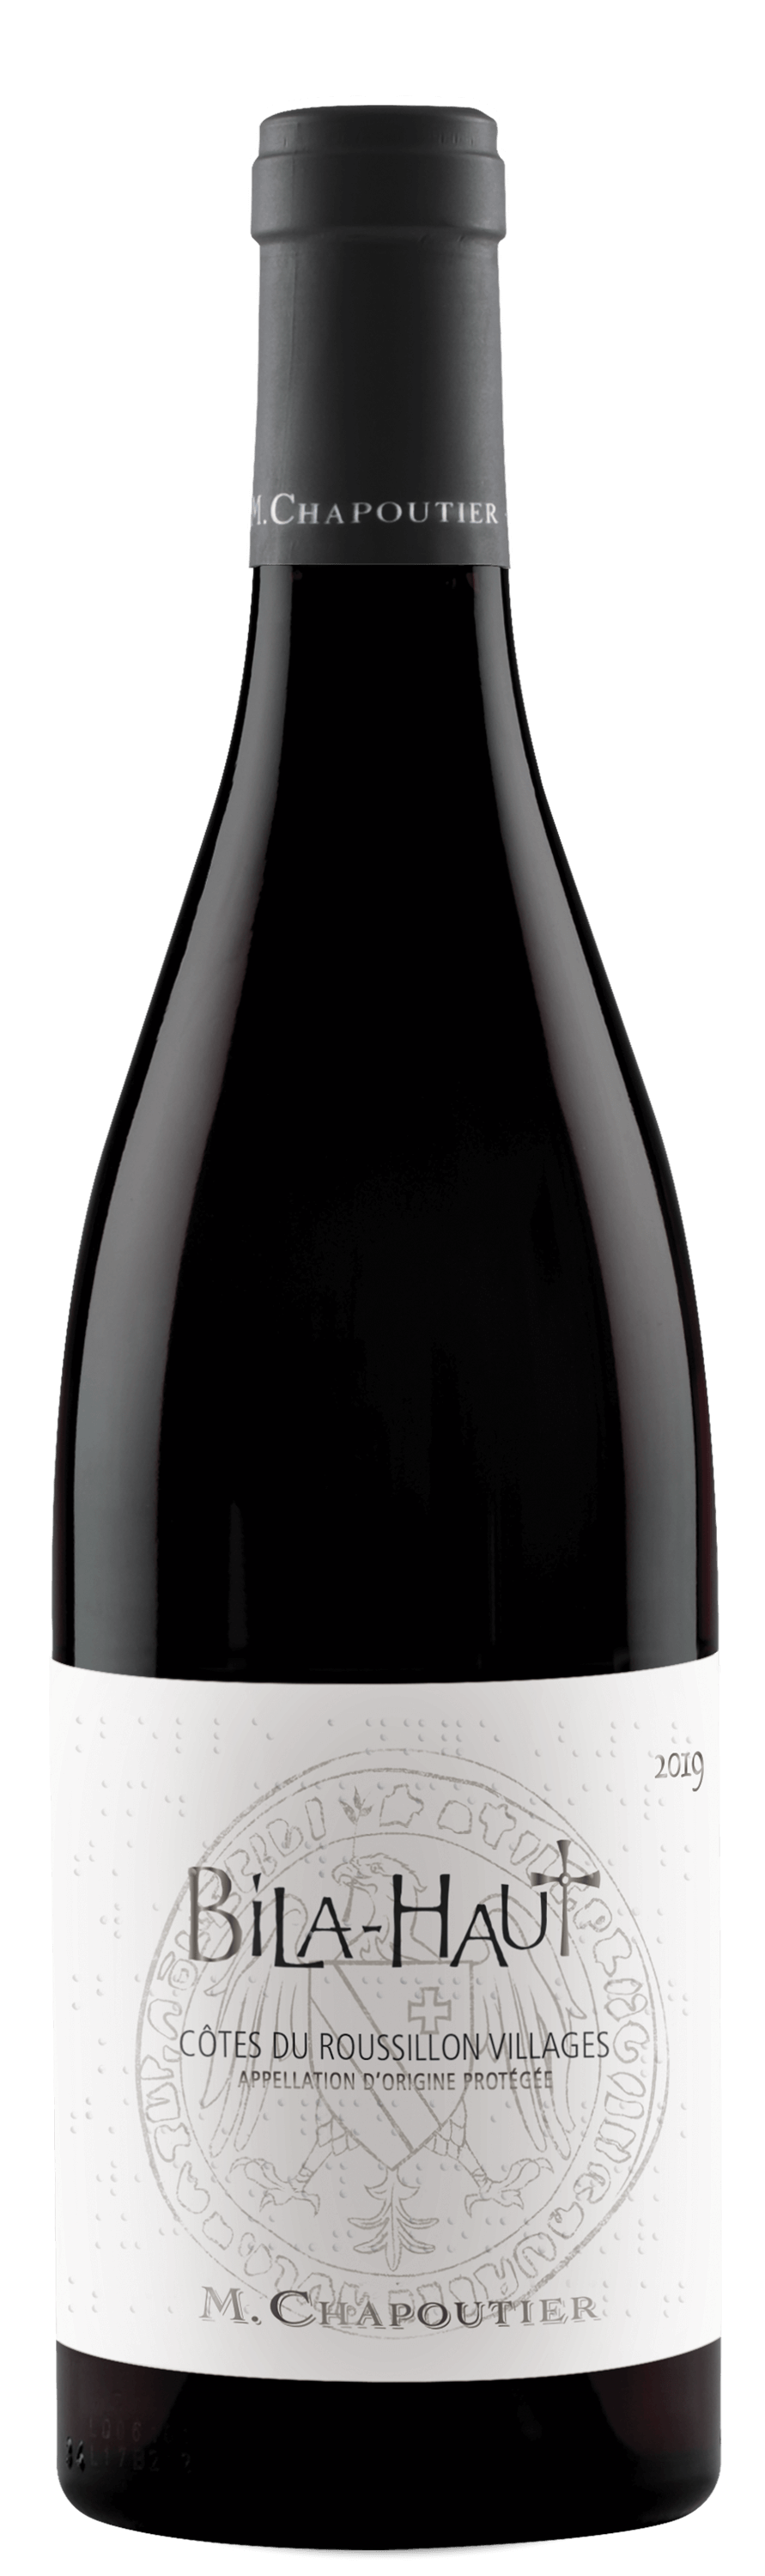 Bila-Haut M CHAPOUTIER vin rouge Roussillon